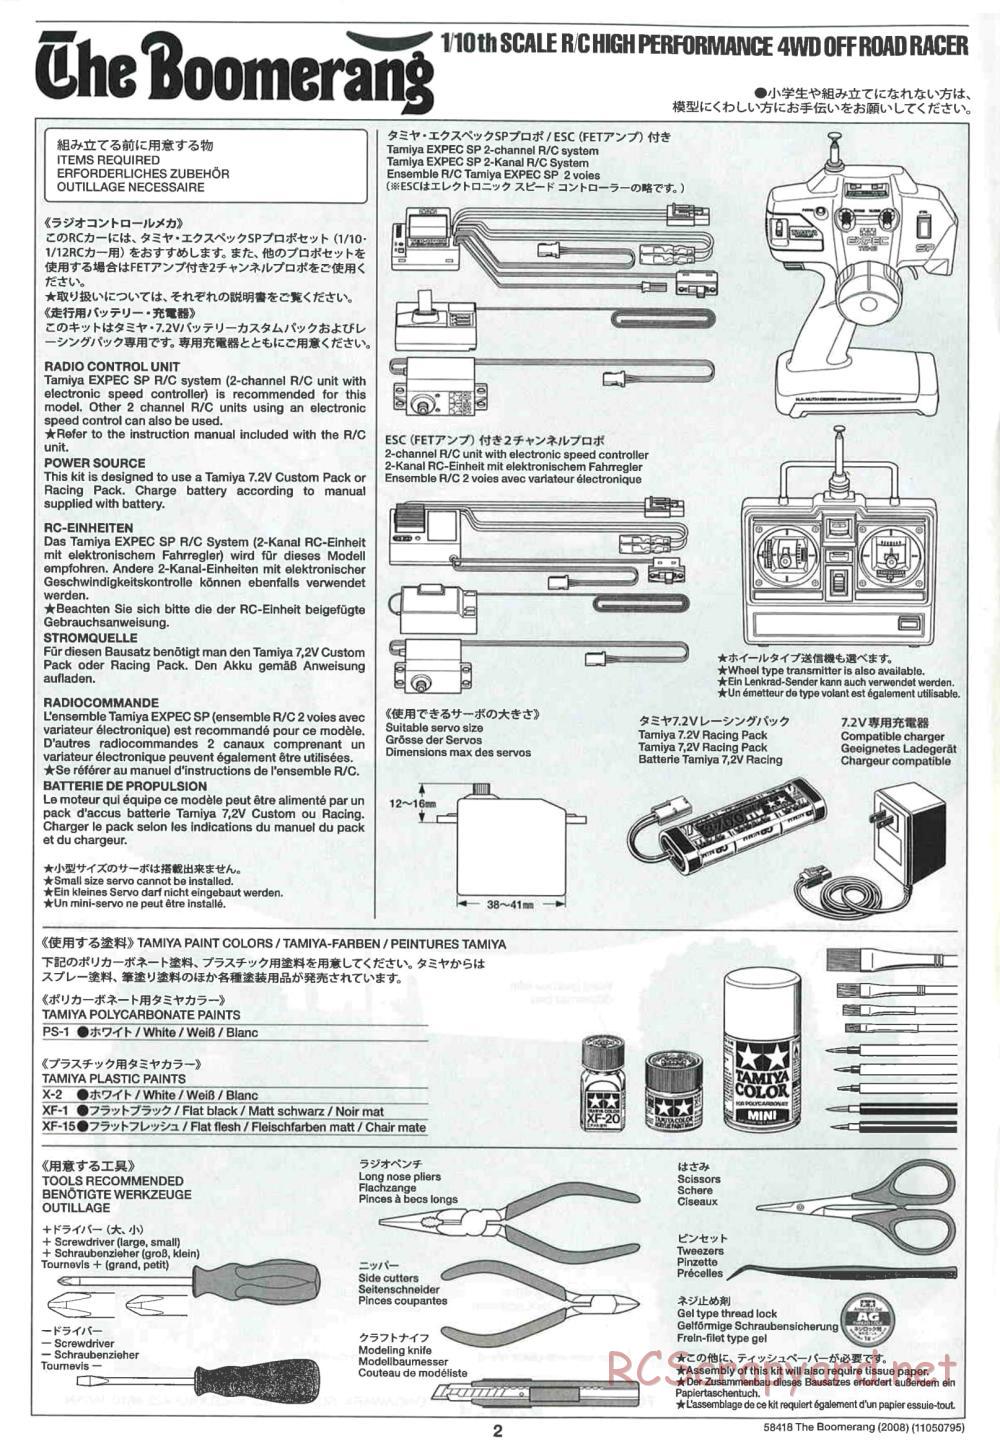 Tamiya - The Boomerang 2008 Chassis - Manual - Page 2